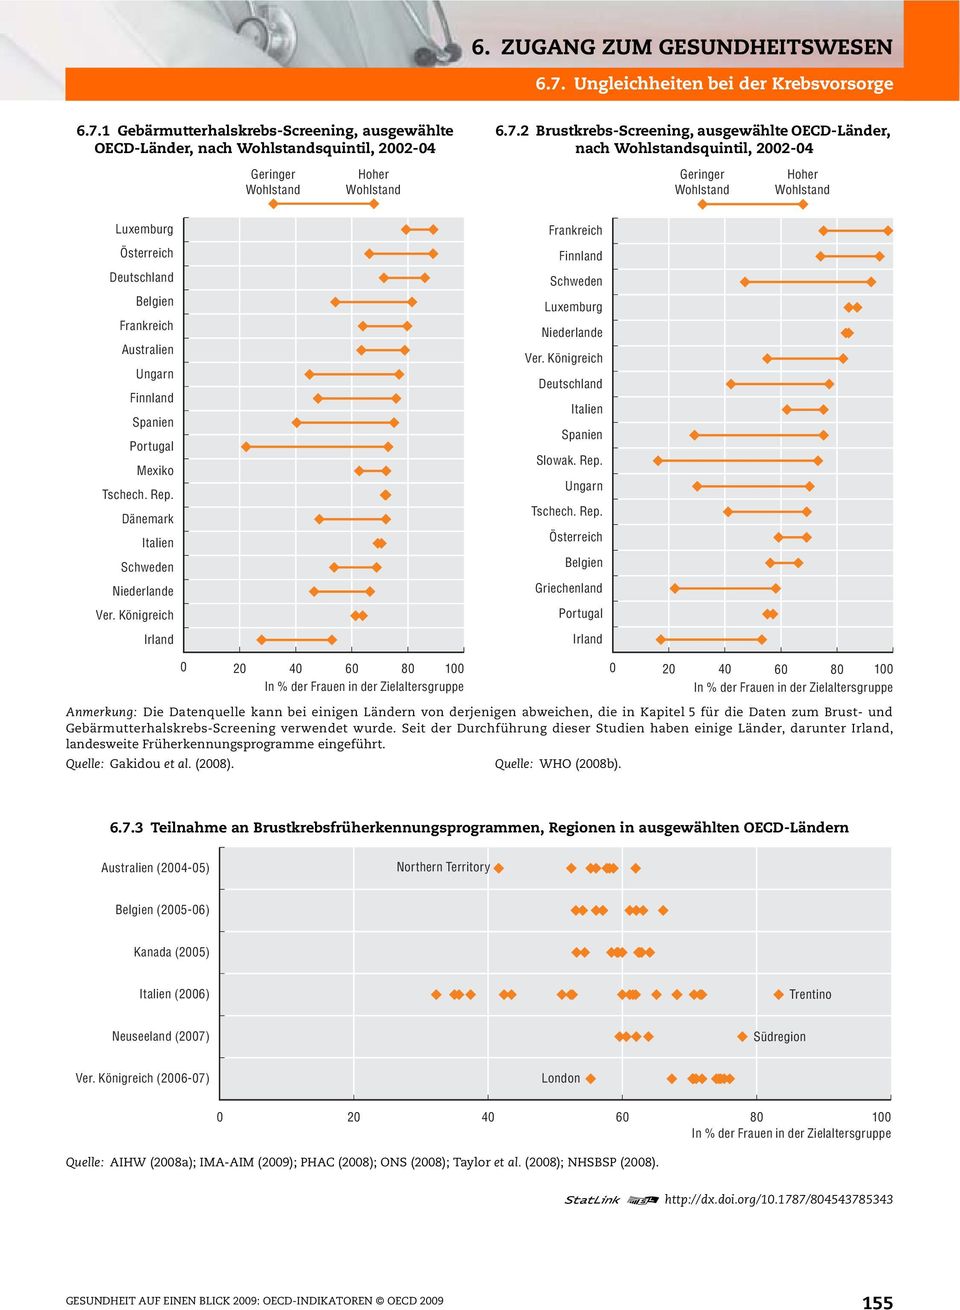 1 Gebärmutterhalskrebs-Screening, ausgewählte OECD-Länder, nach squintil, 2002-04 Geringer Hoher 6.7.